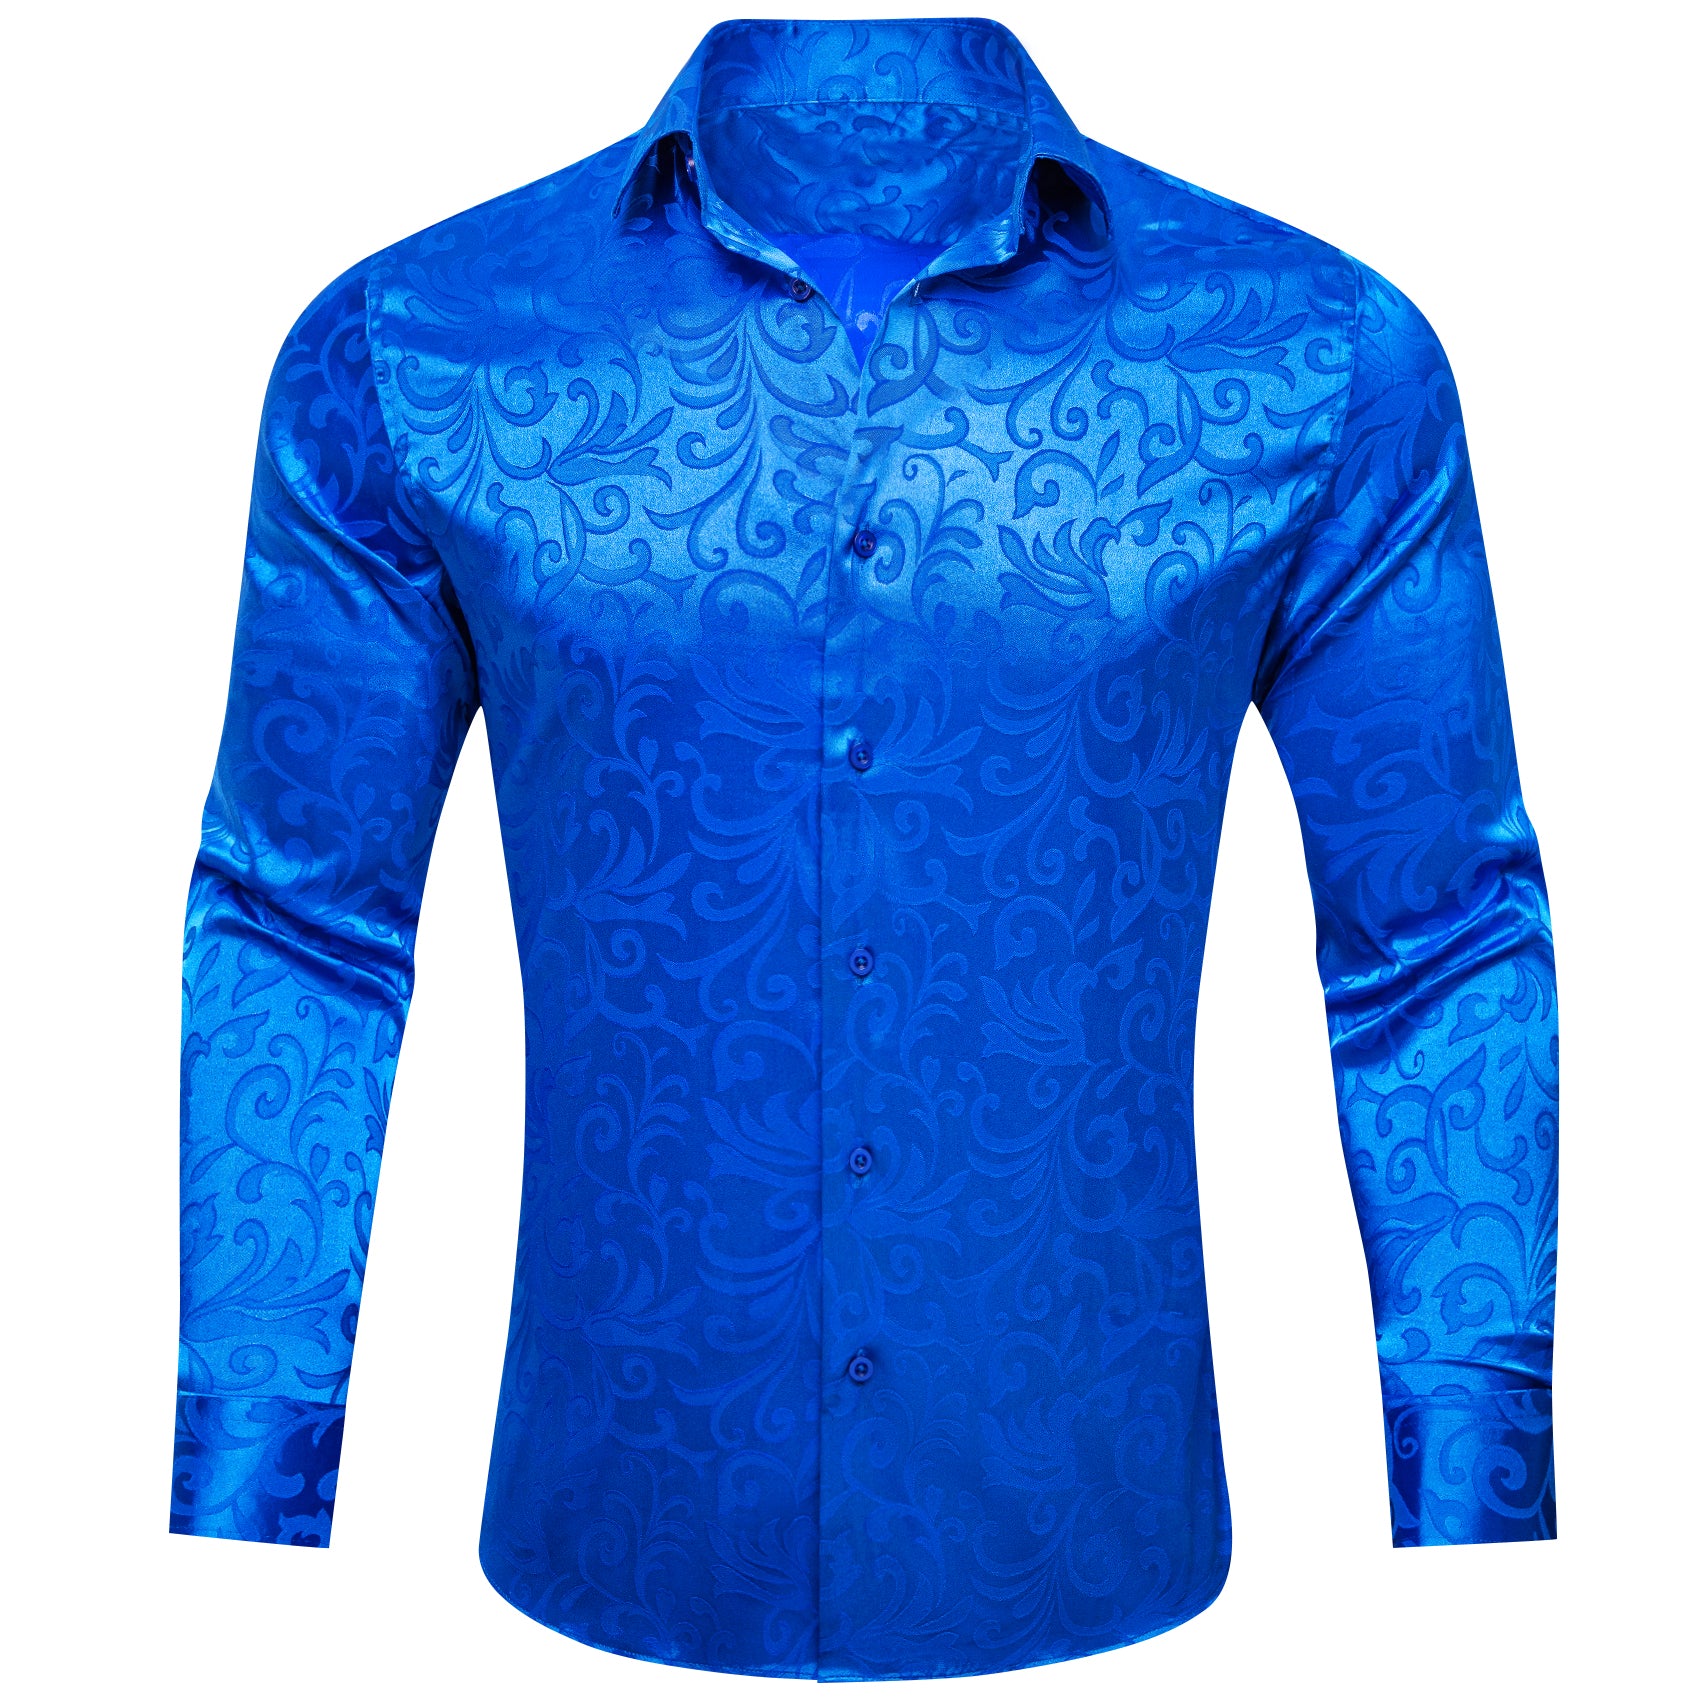 Barry.wang Button Down Shirt Cerulean Blue Floral Silk Men's Shirt